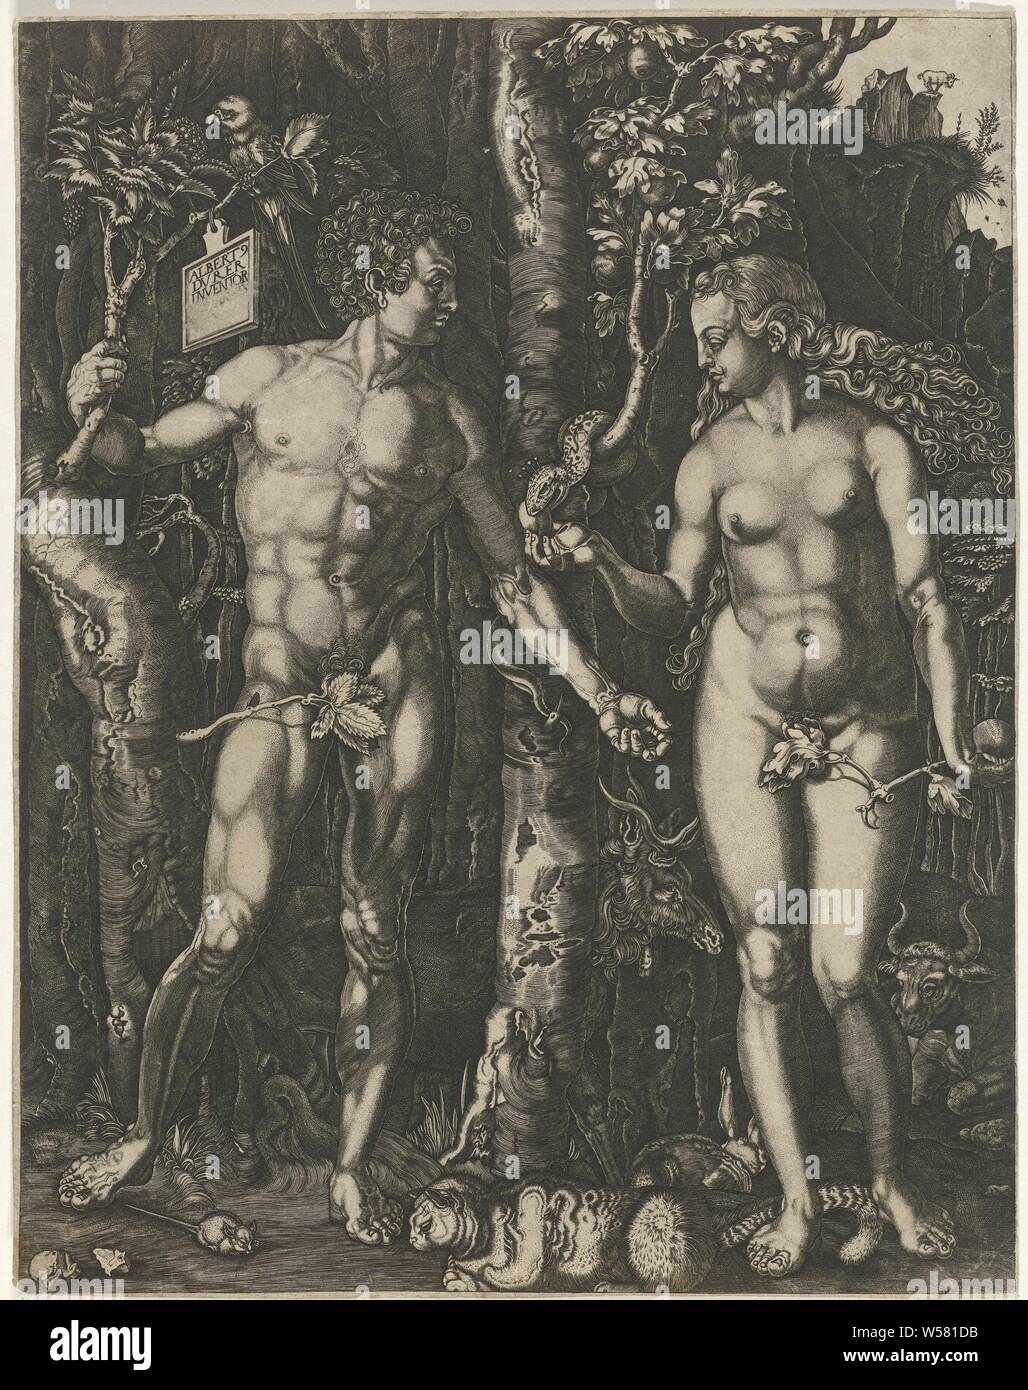 L'automne, Adam et Eve dans le jardin d'Eden. Un serpent Eve donne un fruit. Les animaux sont rassemblés autour d'Adam et Eve, y compris un chat, une souris, un lapin, un cerf, un perroquet et une vache. Eve prend le fruit de la serpent (ou l'arbre) en présence d'Adam (qui peut être d'essayer de l'arrêter), animaux, Jan Baptist Goossens, Keulen, ch. 1680, papier, gravure, h 241 mm × W 188 mm Banque D'Images